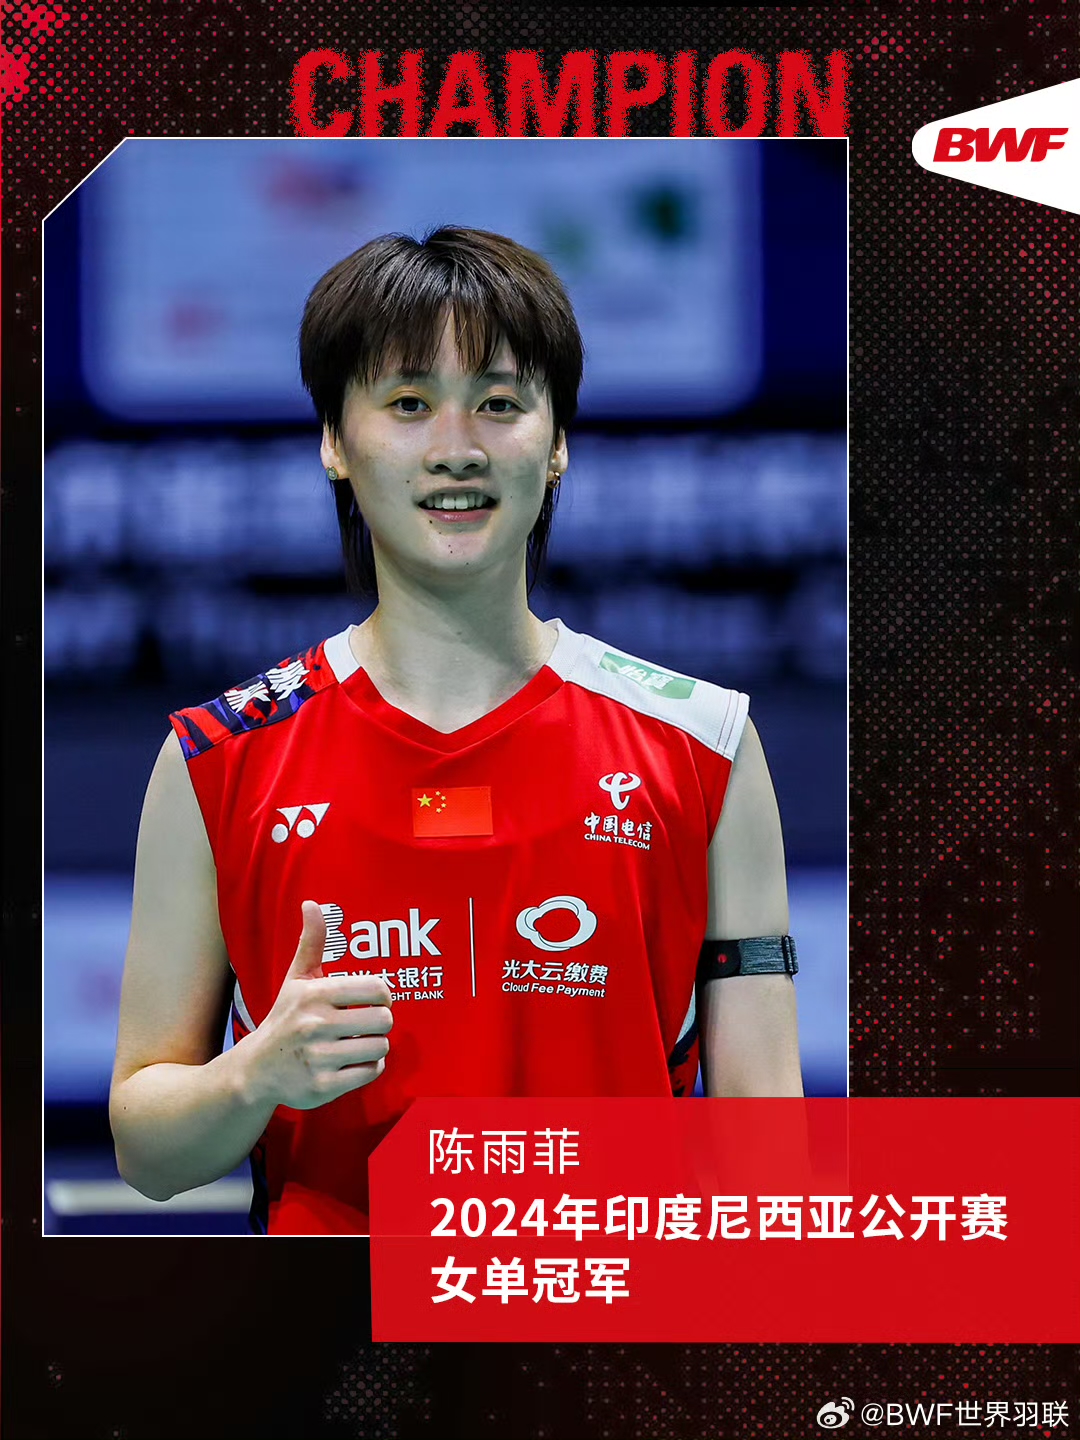 石宇奇夺得印尼羽毛球公开赛男单冠军,陈雨菲夺得女单冠军